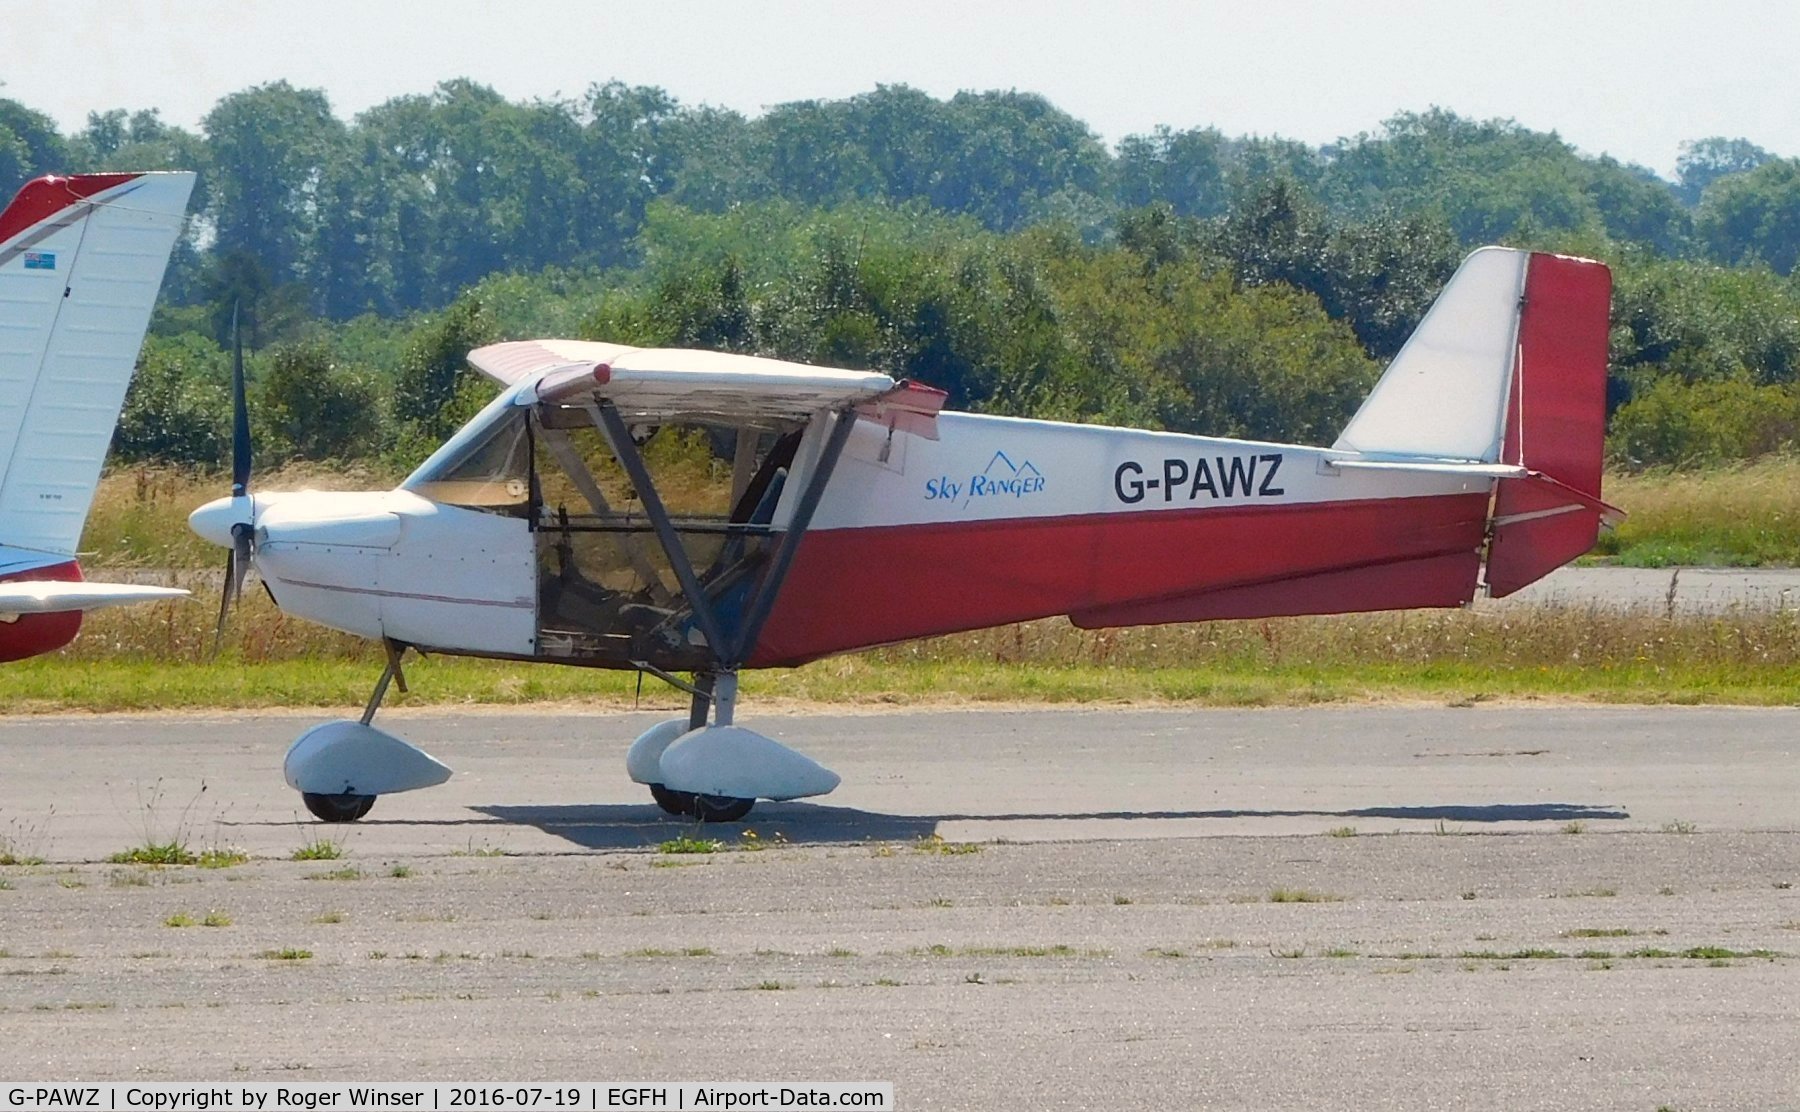 G-PAWZ, 2007 Skyranger Swift 912S(1) C/N BMAA/HB/528, Visiting Skyranger Swift.